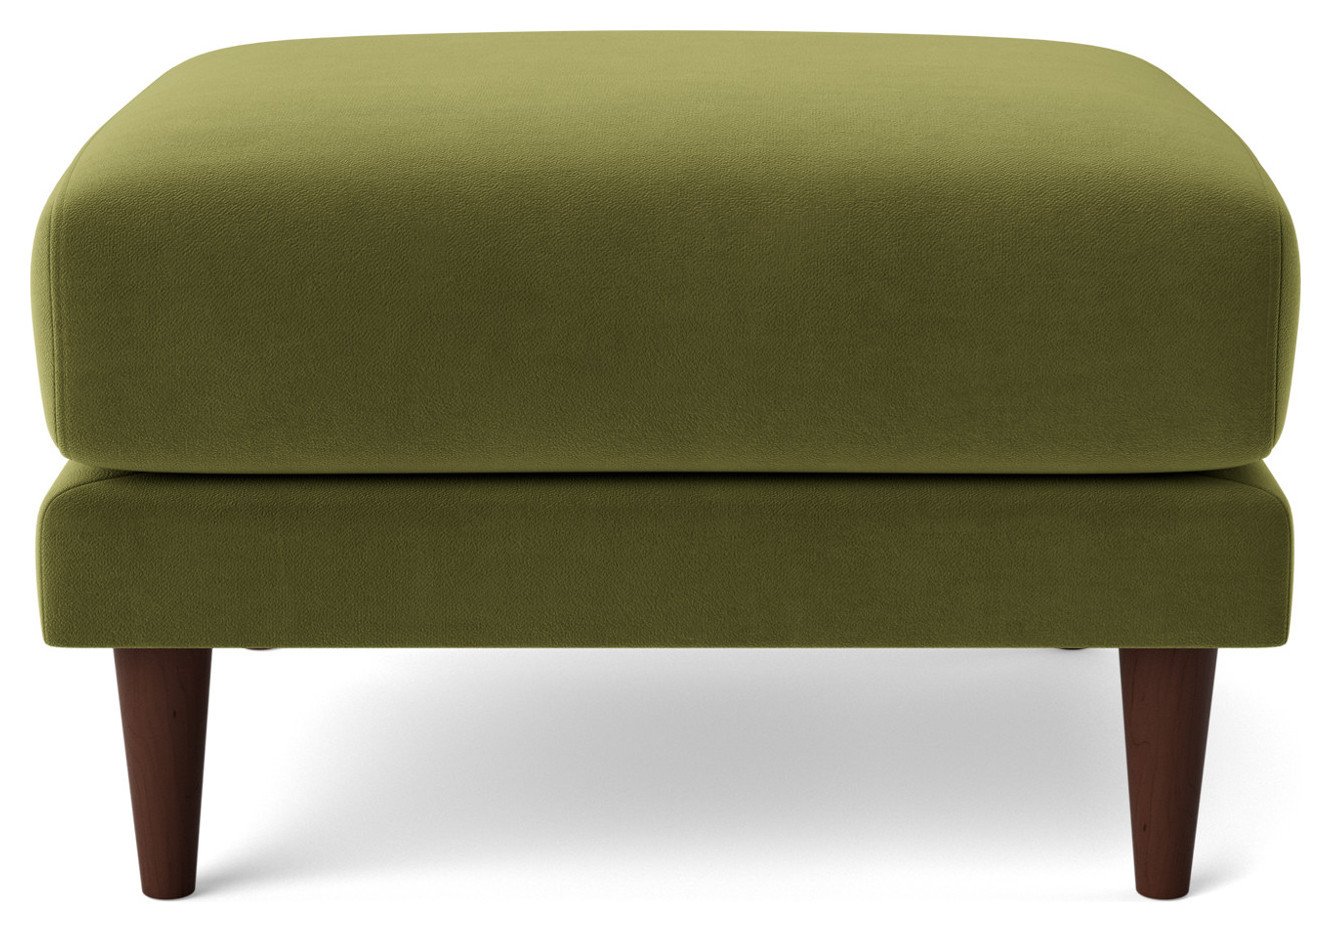 Swoon Turin Velvet Ottoman Footstool - Fern Green